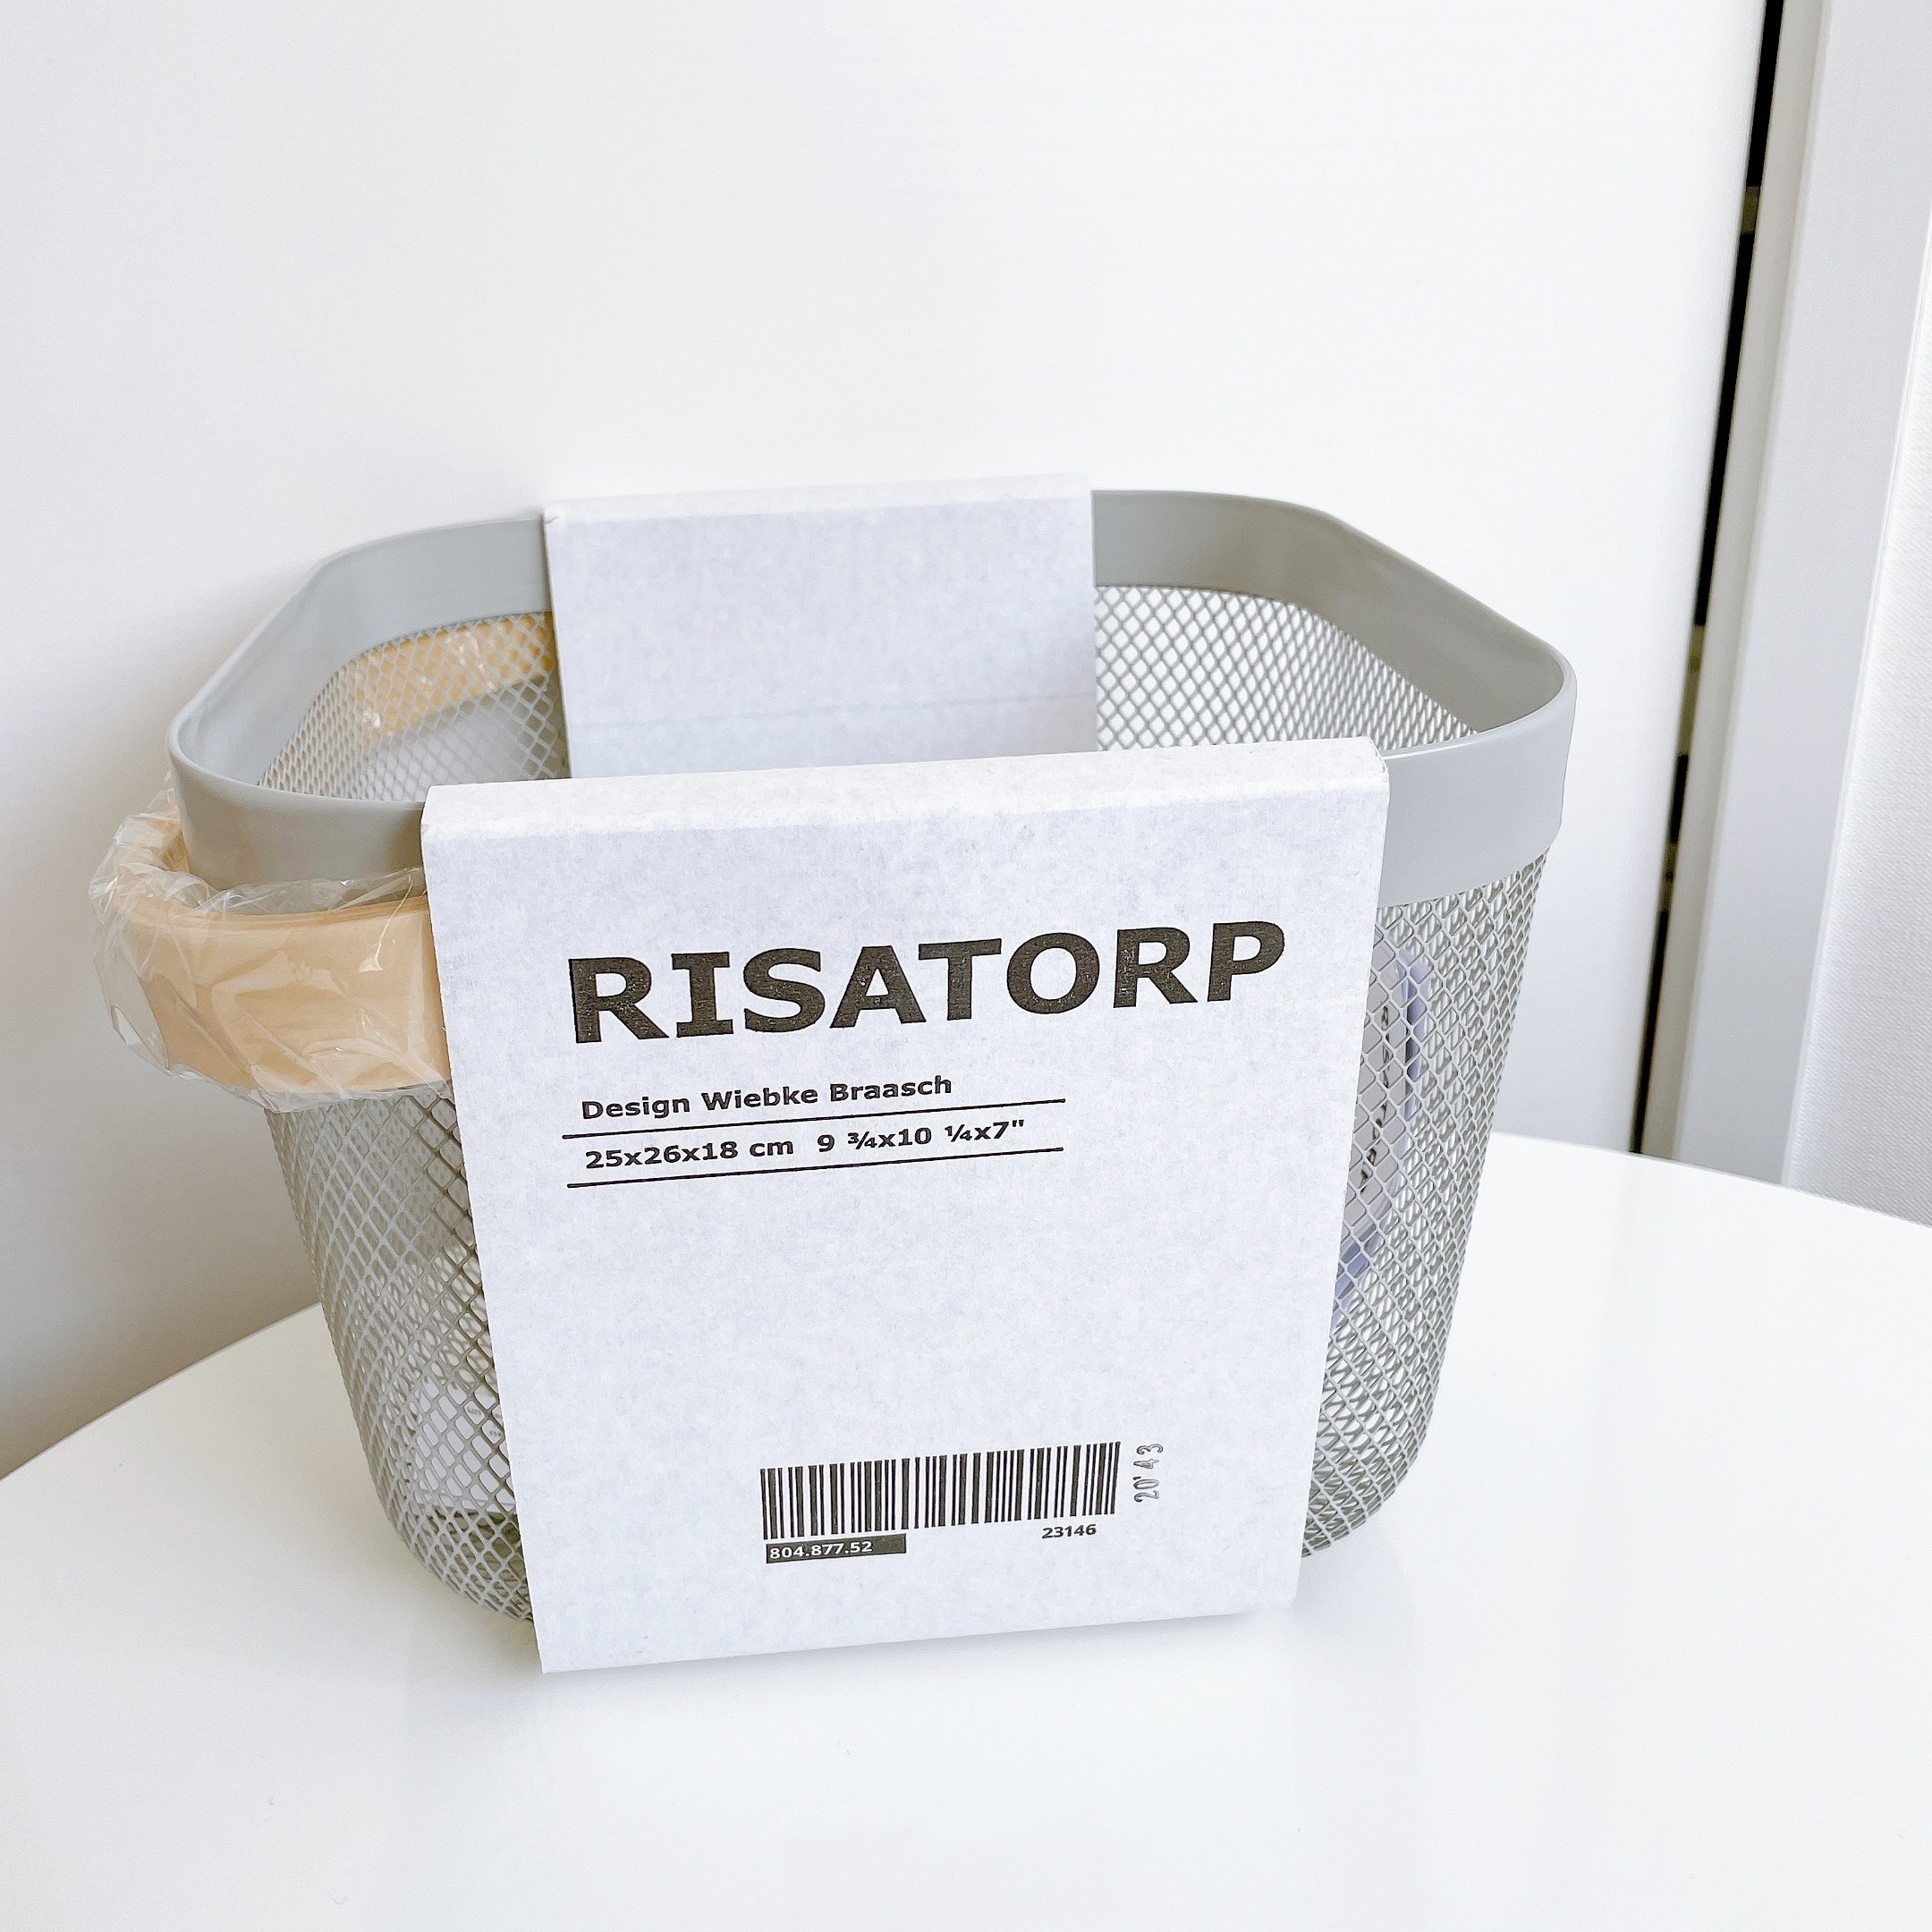 IKEA（イケア）のおすすめ収納グッズ「RISATORP リーサトルプ バスケット」